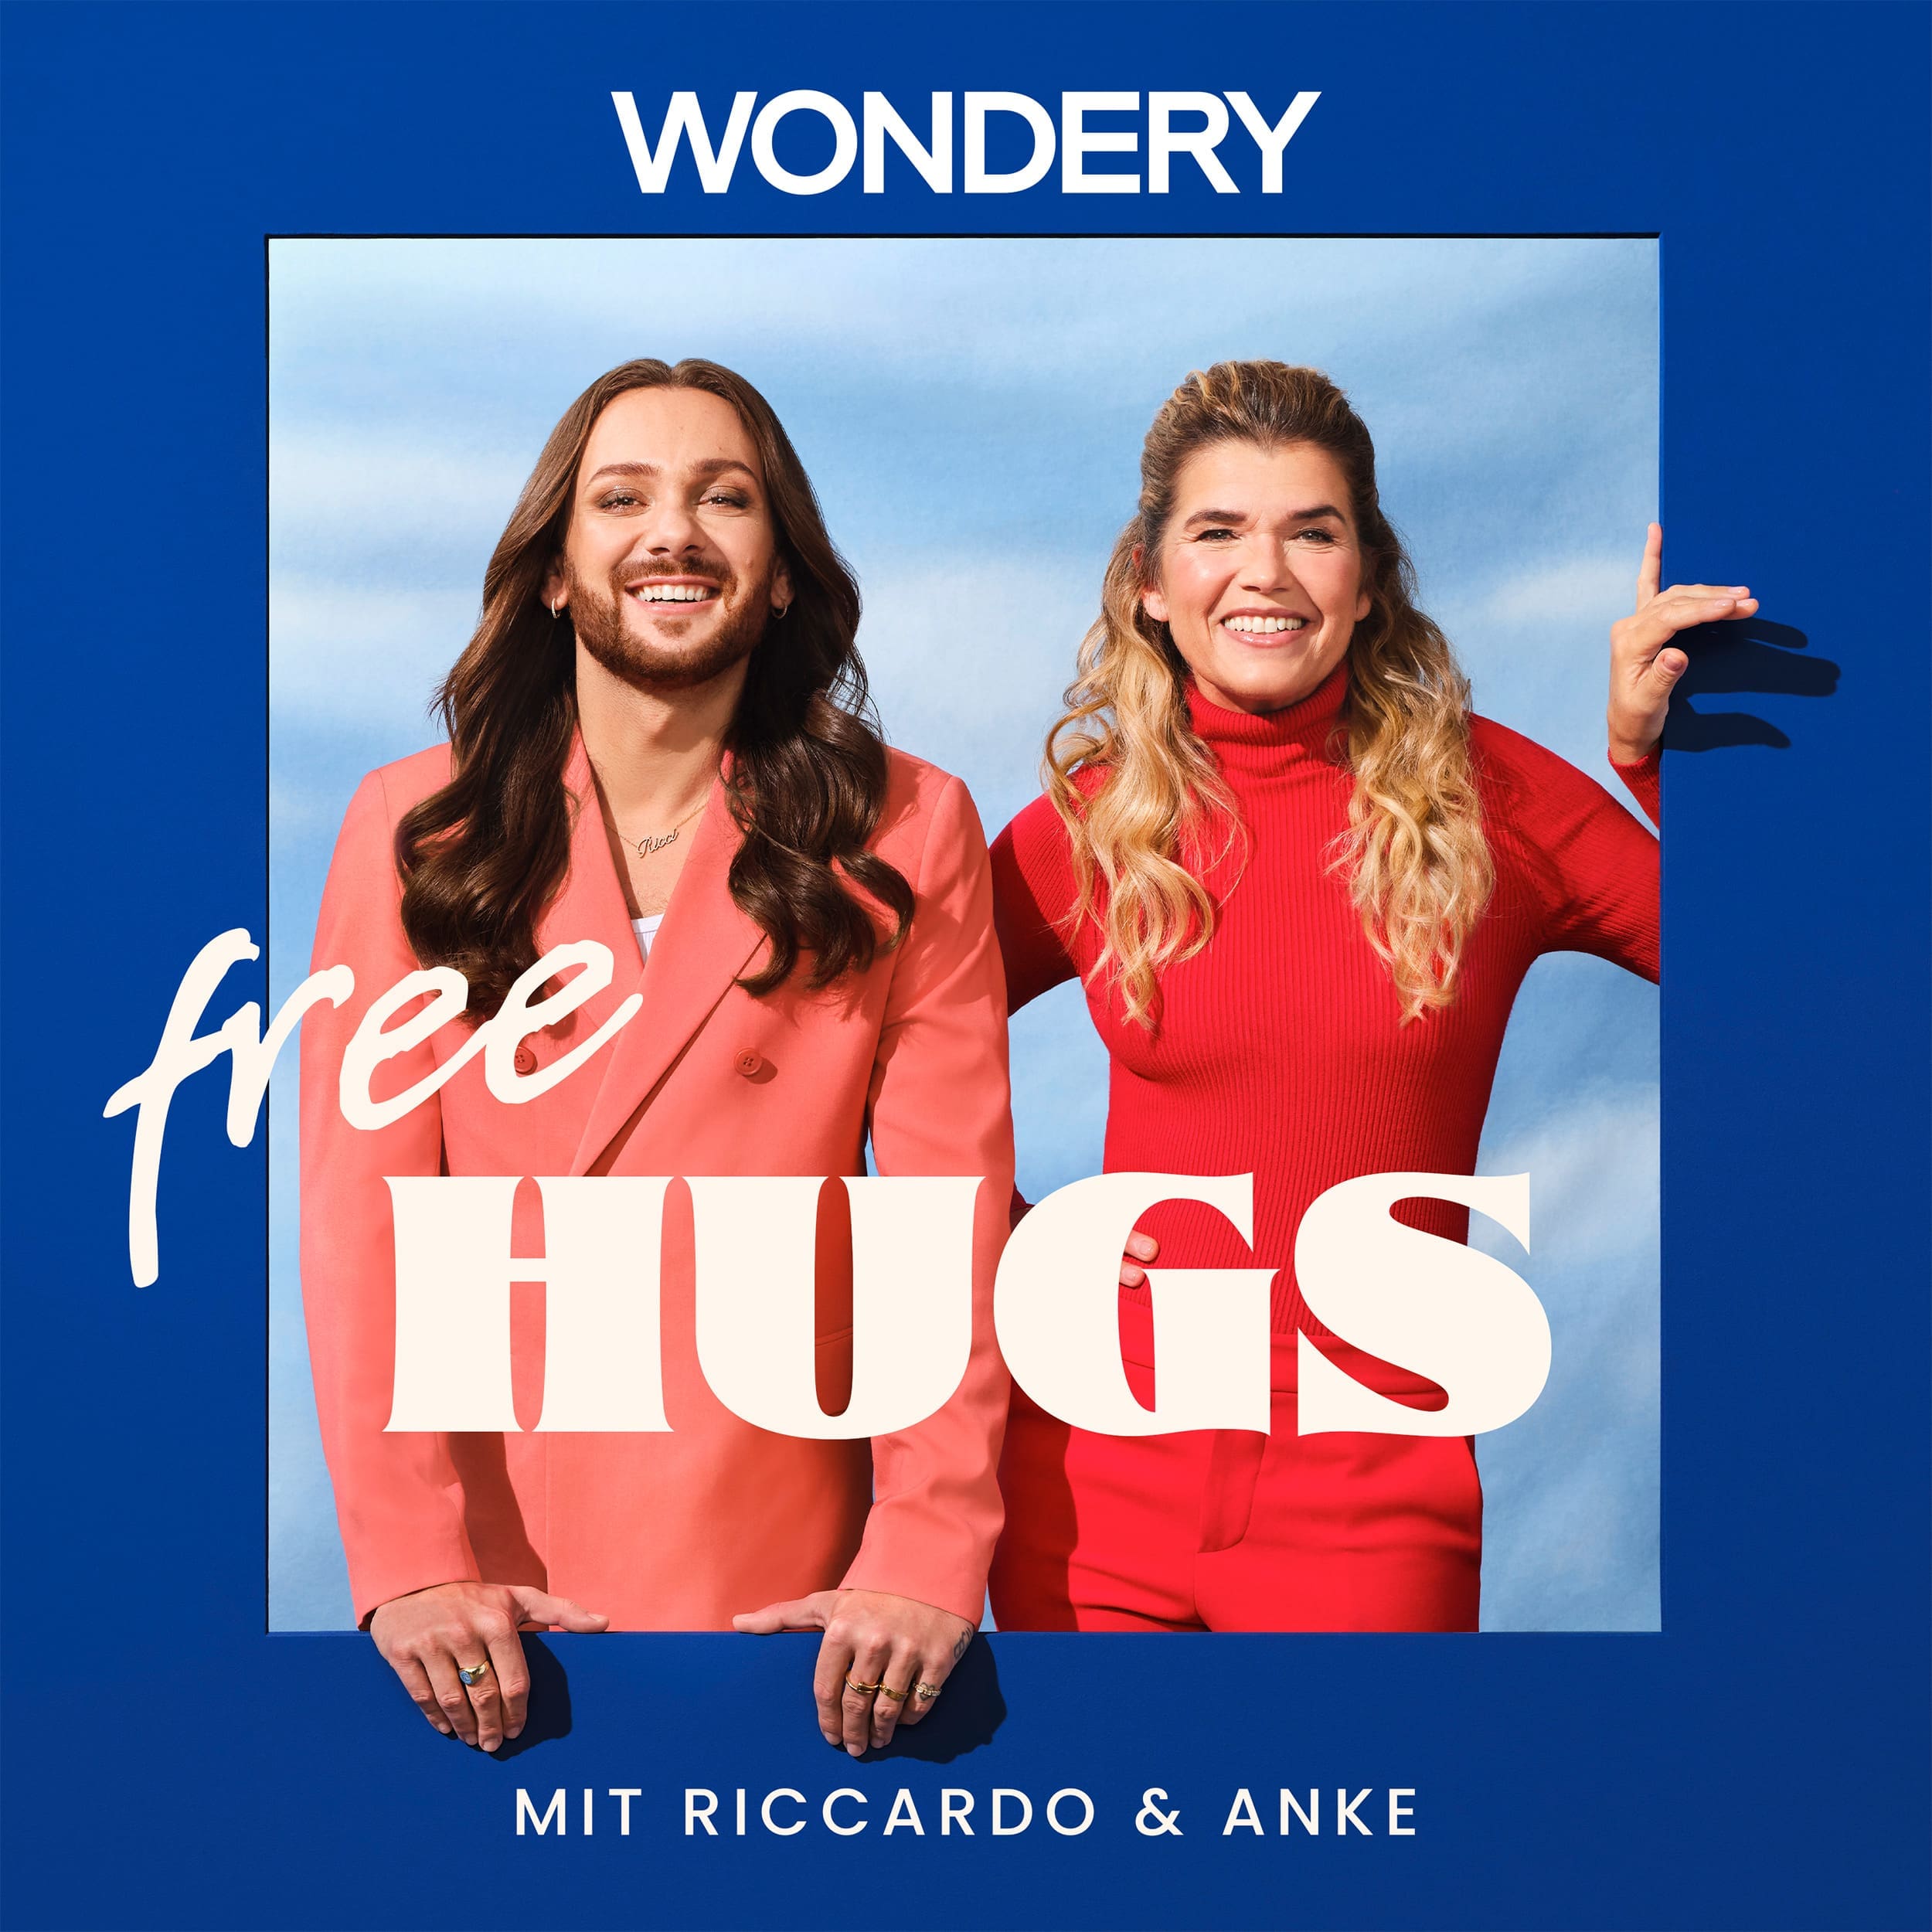 Free Hugs mit Anke Engelke und Riccardo Simonetti für Wondery von BosePark Productions aus Berlin